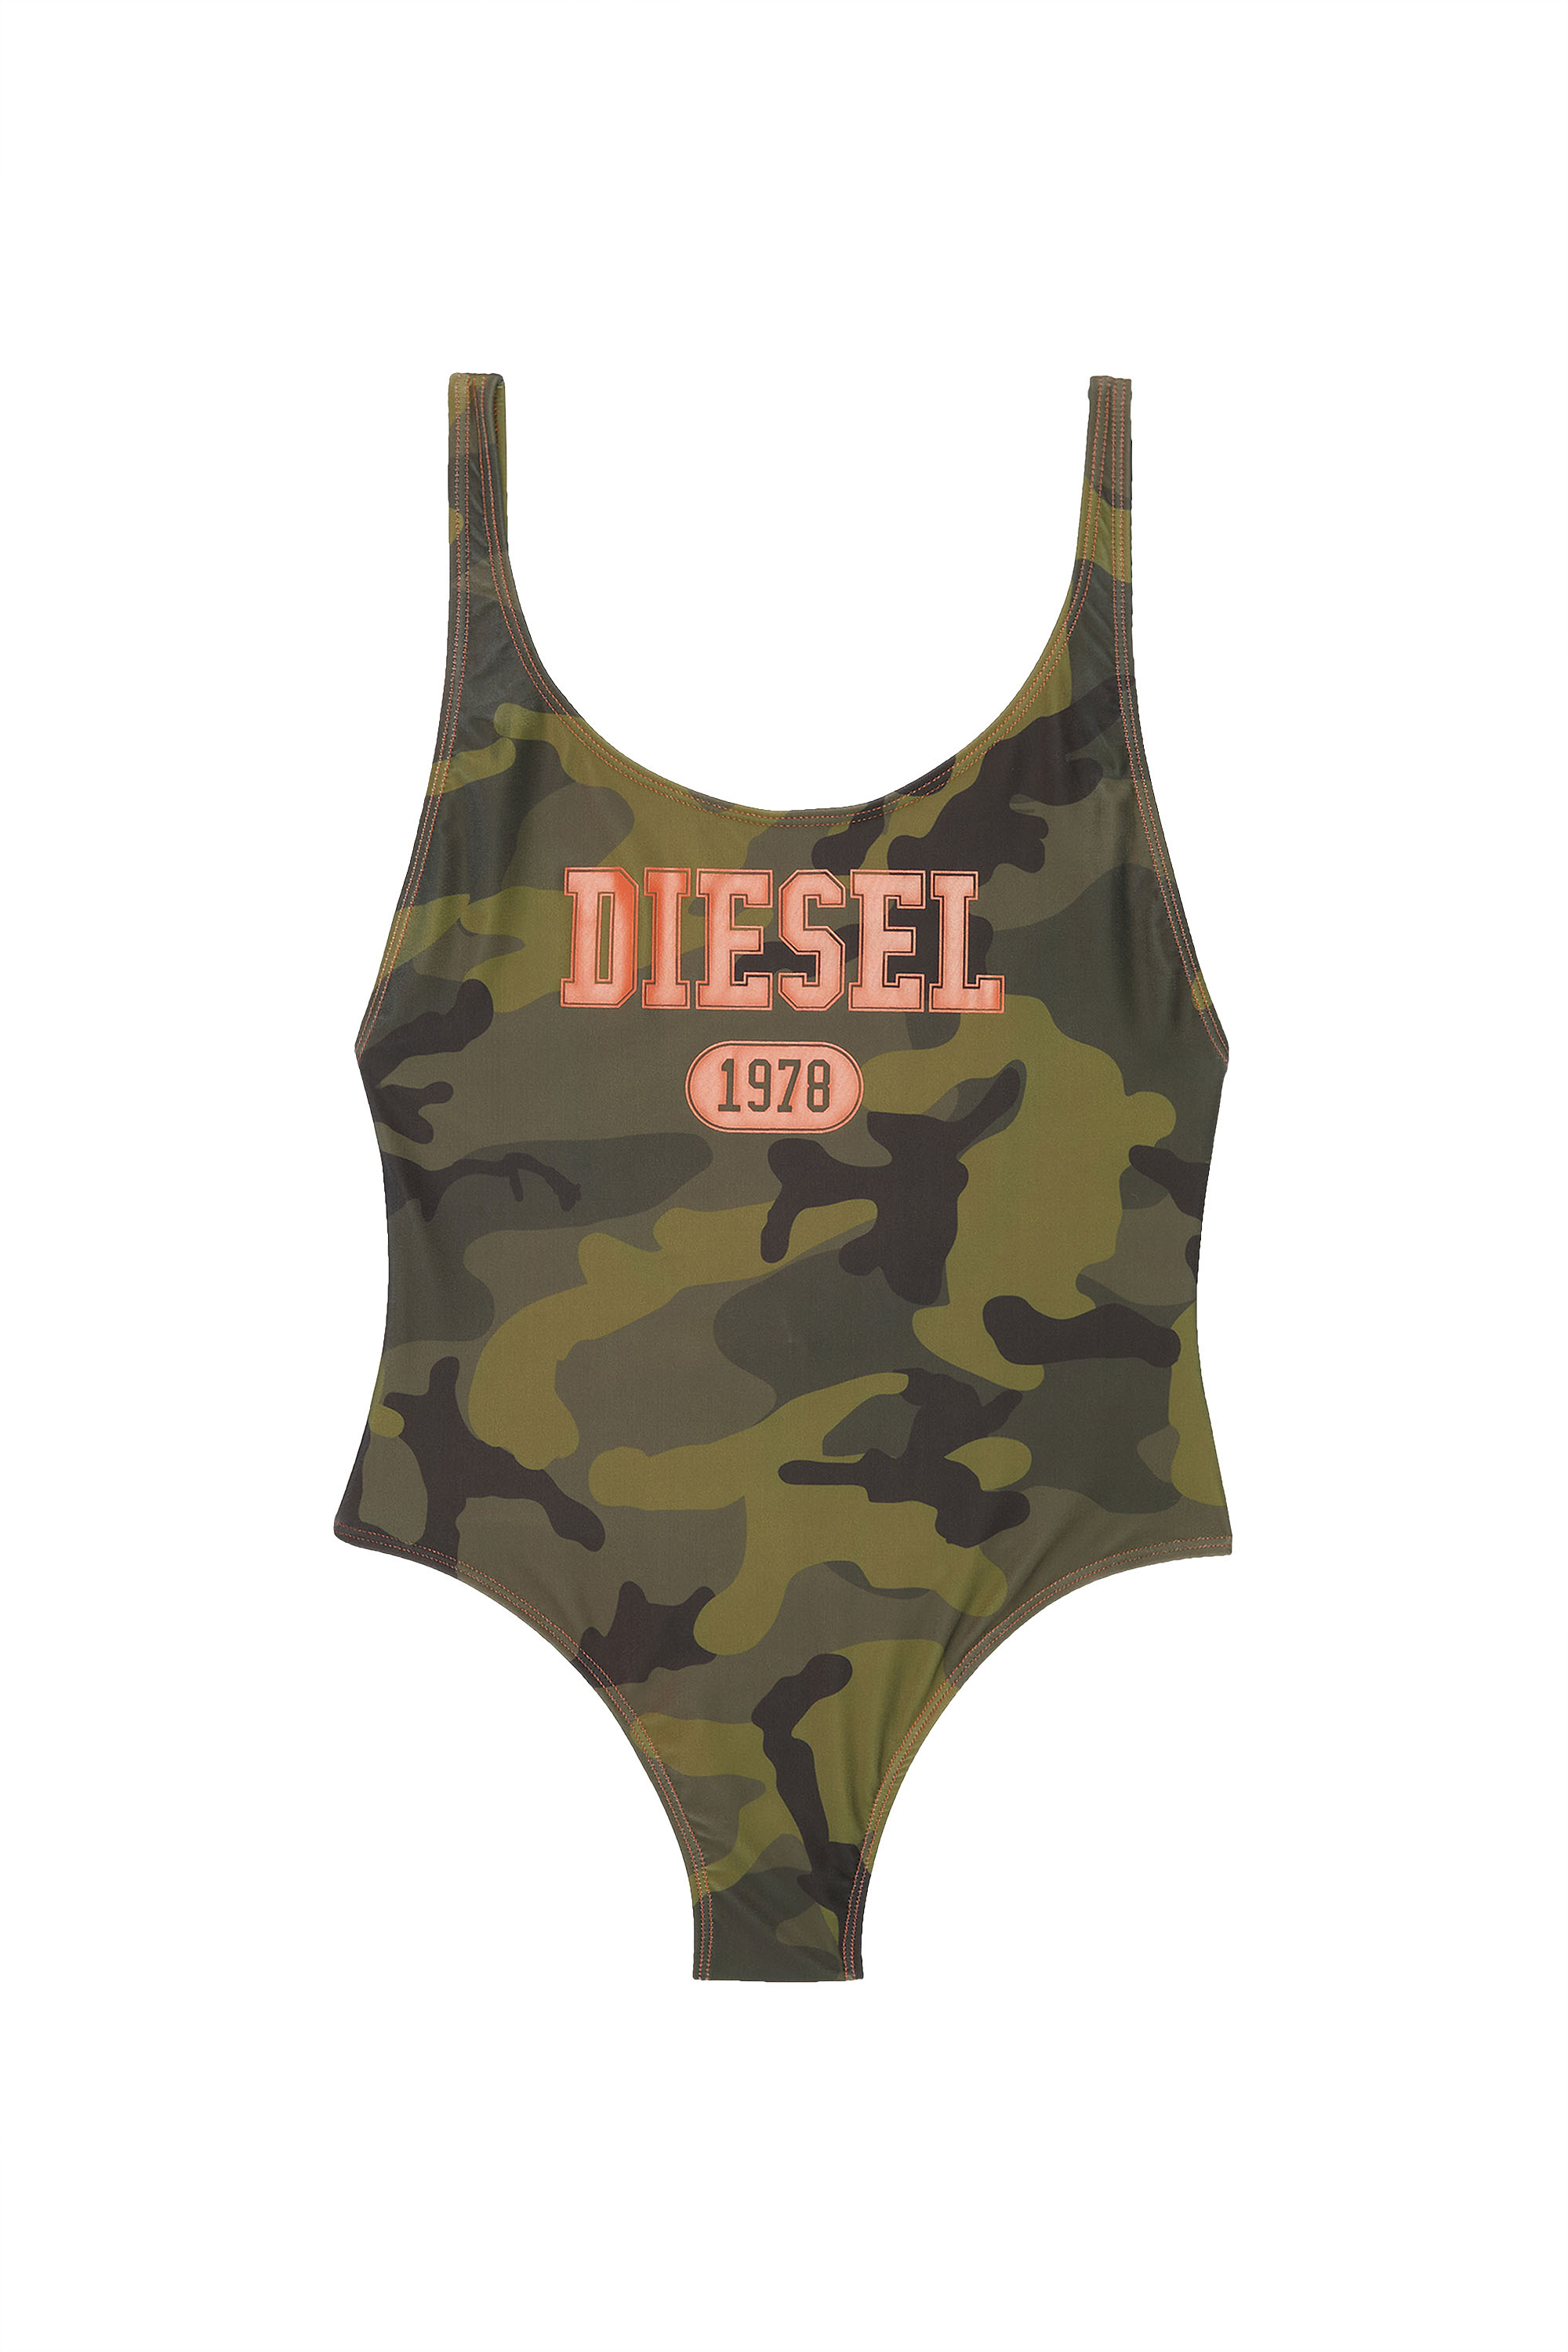 Diesel - BFSW-SLIA, Armeegrün - Image 3